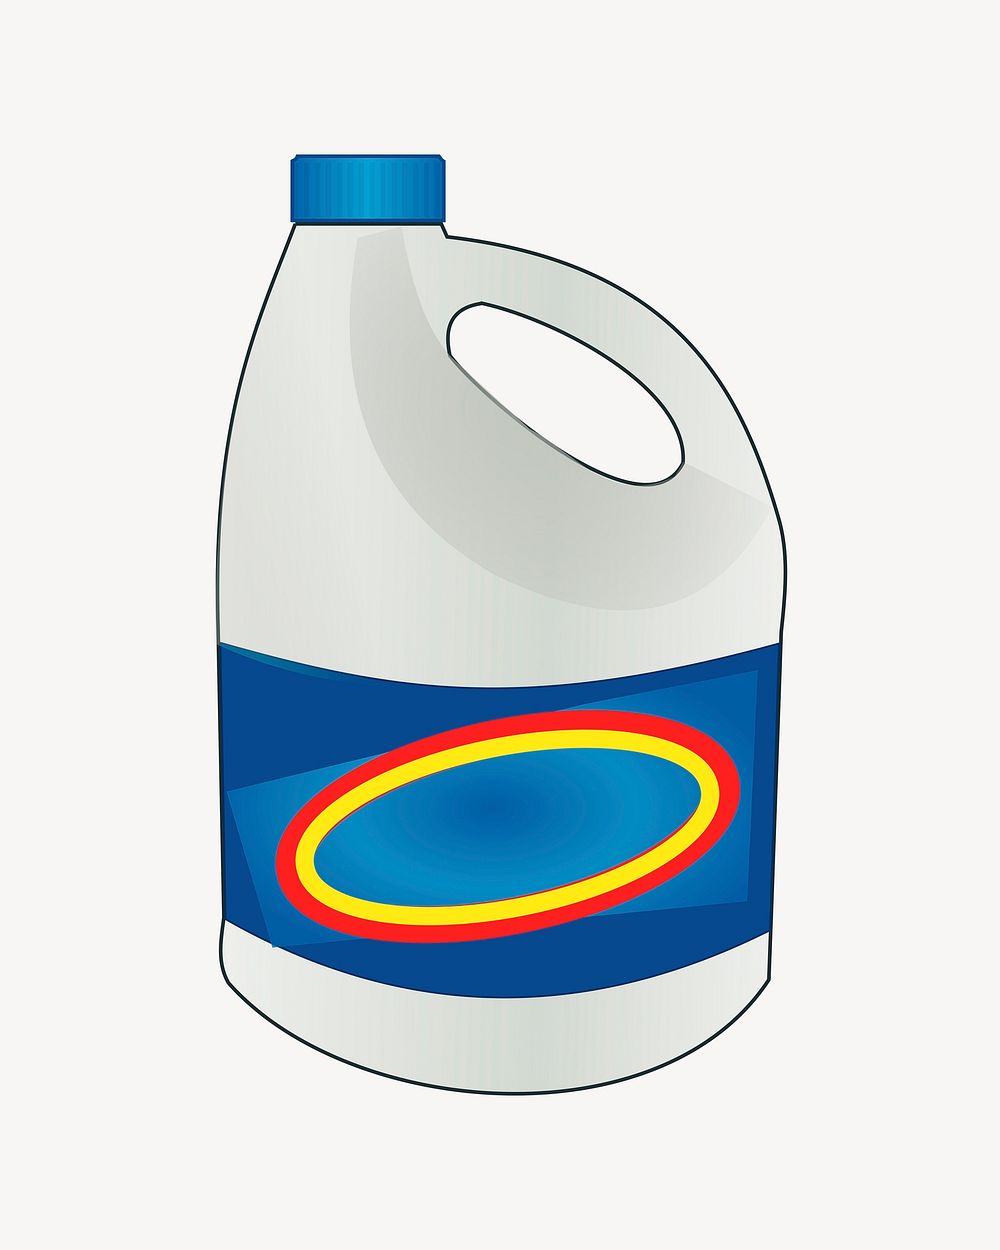 Bleach bottle illustration. Free public domain CC0 image.